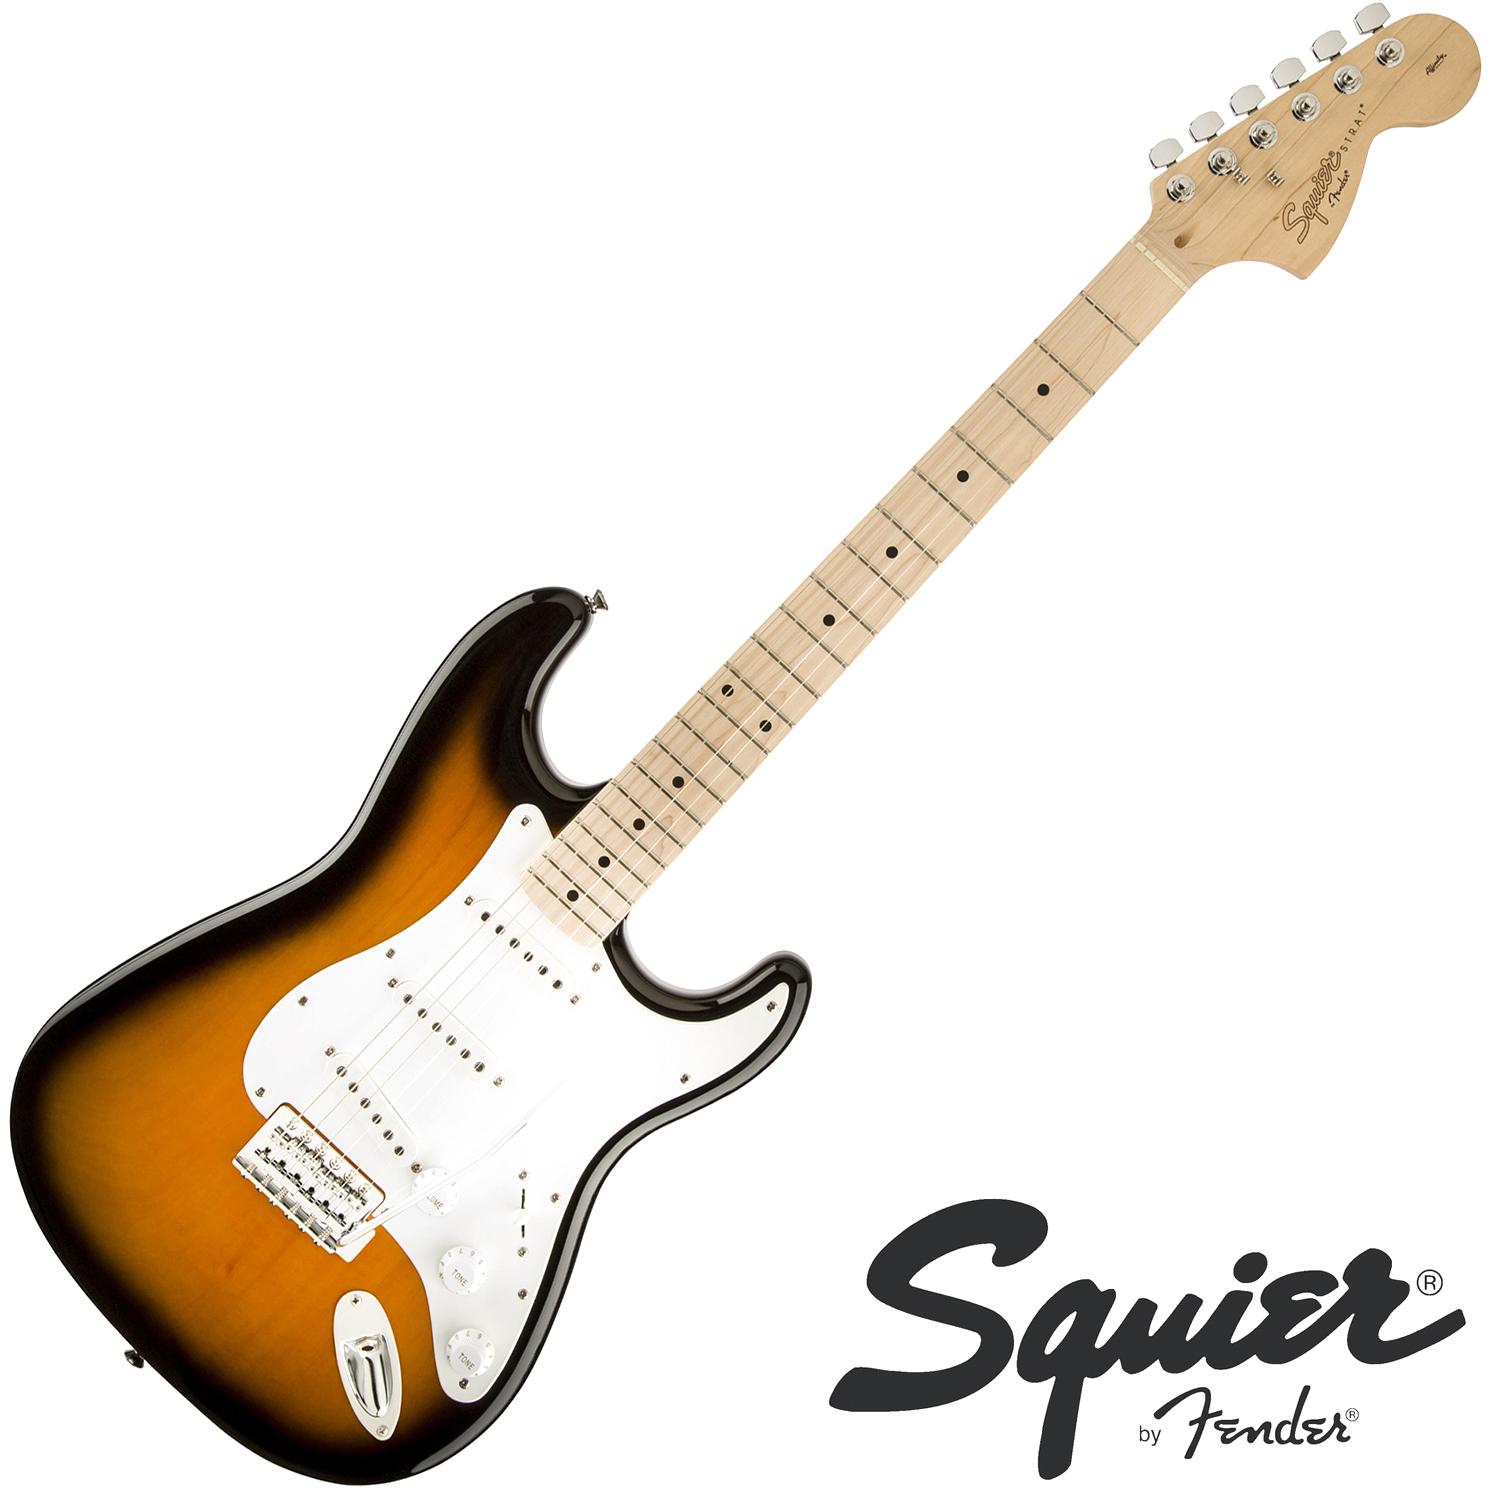 Fender® Squier Affinity Strat MN กีตาร์ไฟฟ้า 21 เฟรต ไม้อัลเดอร์ ปิ๊กอัพซิงเกิ้ลคอยล์ คอขาว รุ่นปี 2021 + แถมฟรีคันโยก  ** ประกันศูนย์ 1 ปี **